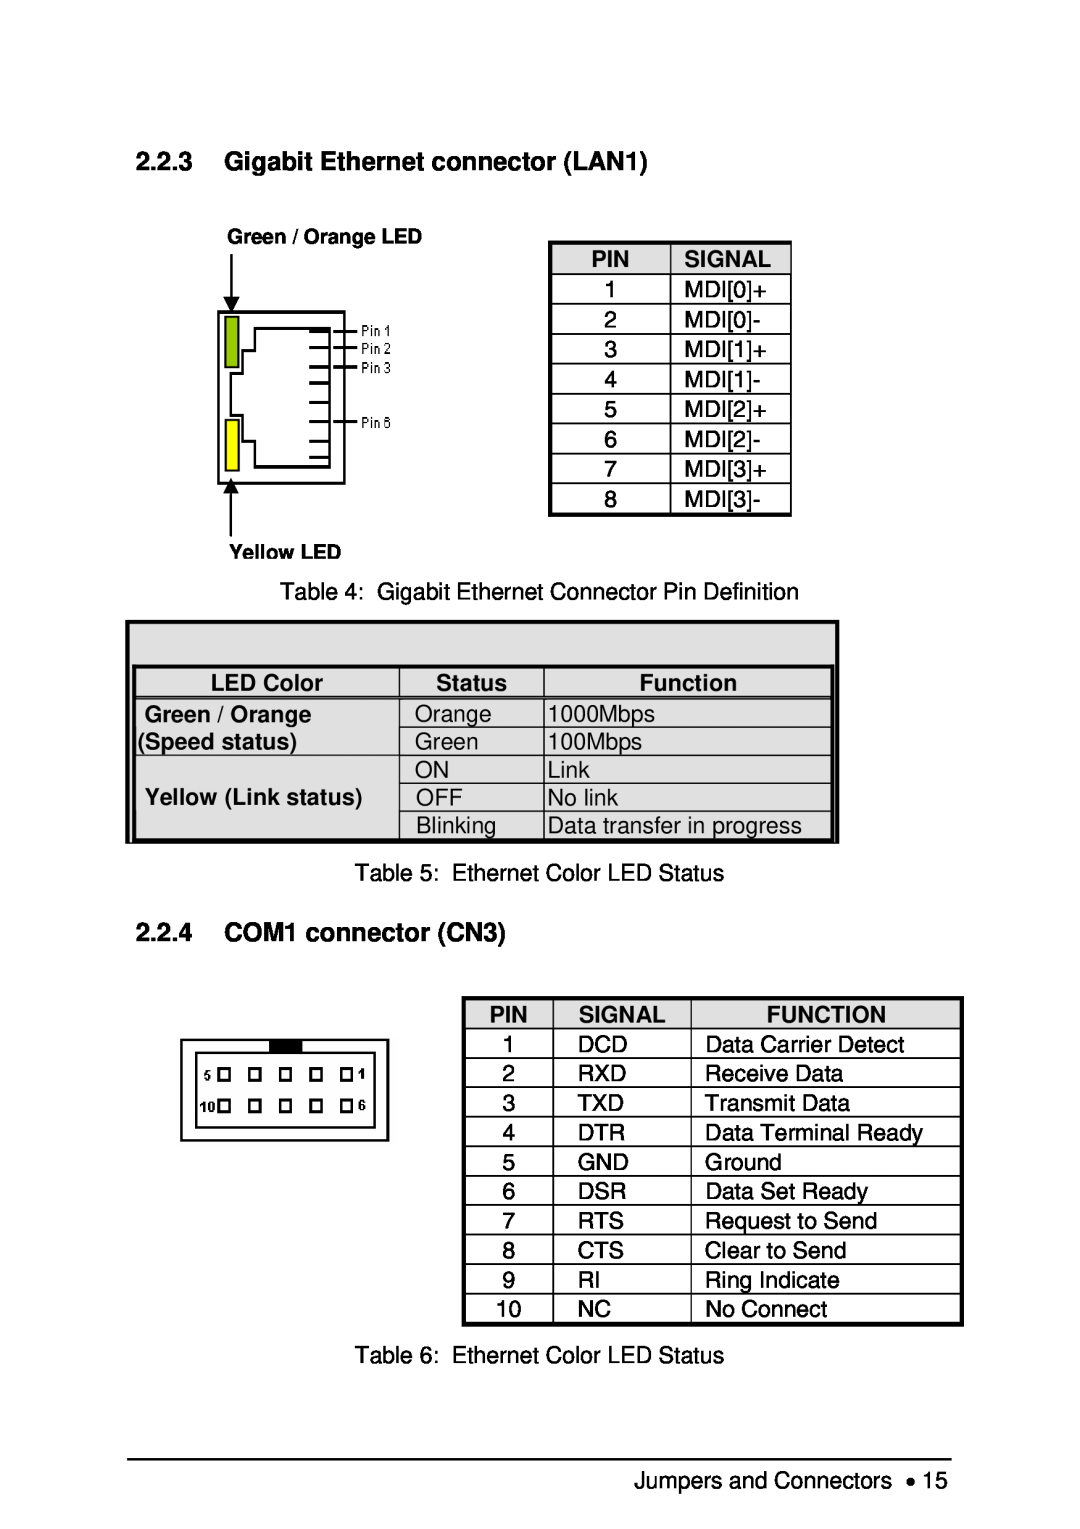 Intel NuPRO-850 Gigabit Ethernet connector LAN1, 2.2.4 COM1 connector CN3, LED Color, Status, Function, Green / Orange 